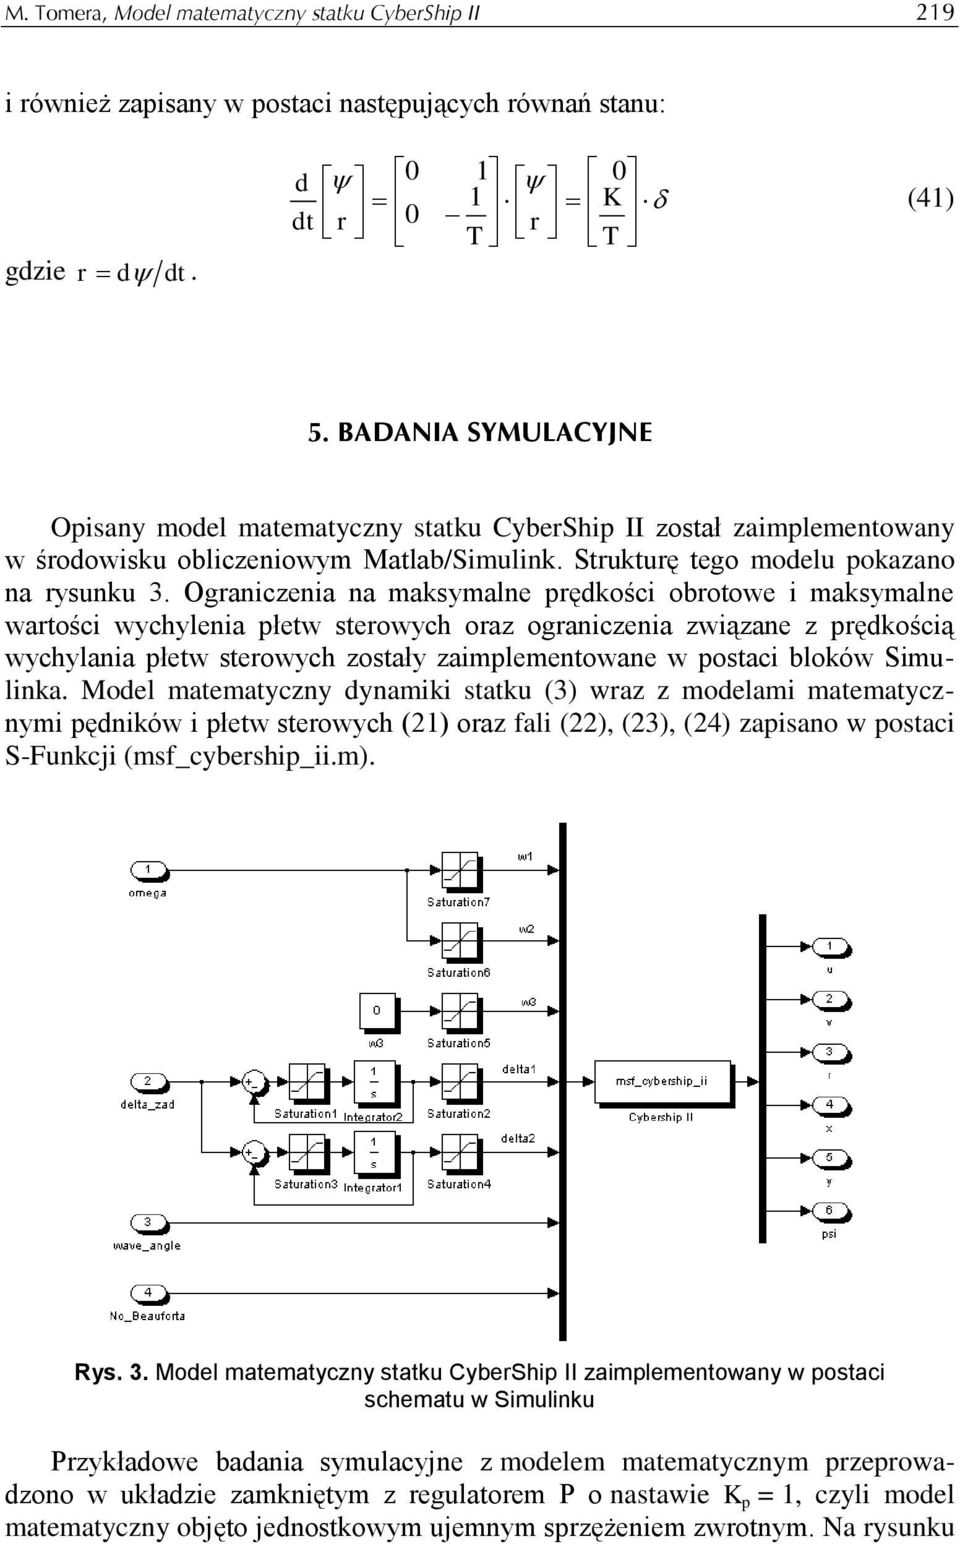 pędkoścą wychylana płetw steowych zostały zamplementowane w postac bloków Smlnka Model matematyczny dynamk statk (3) waz z modelam matematycznym pędnków płetw steowych () oaz fal (), (3), (4) zapsano